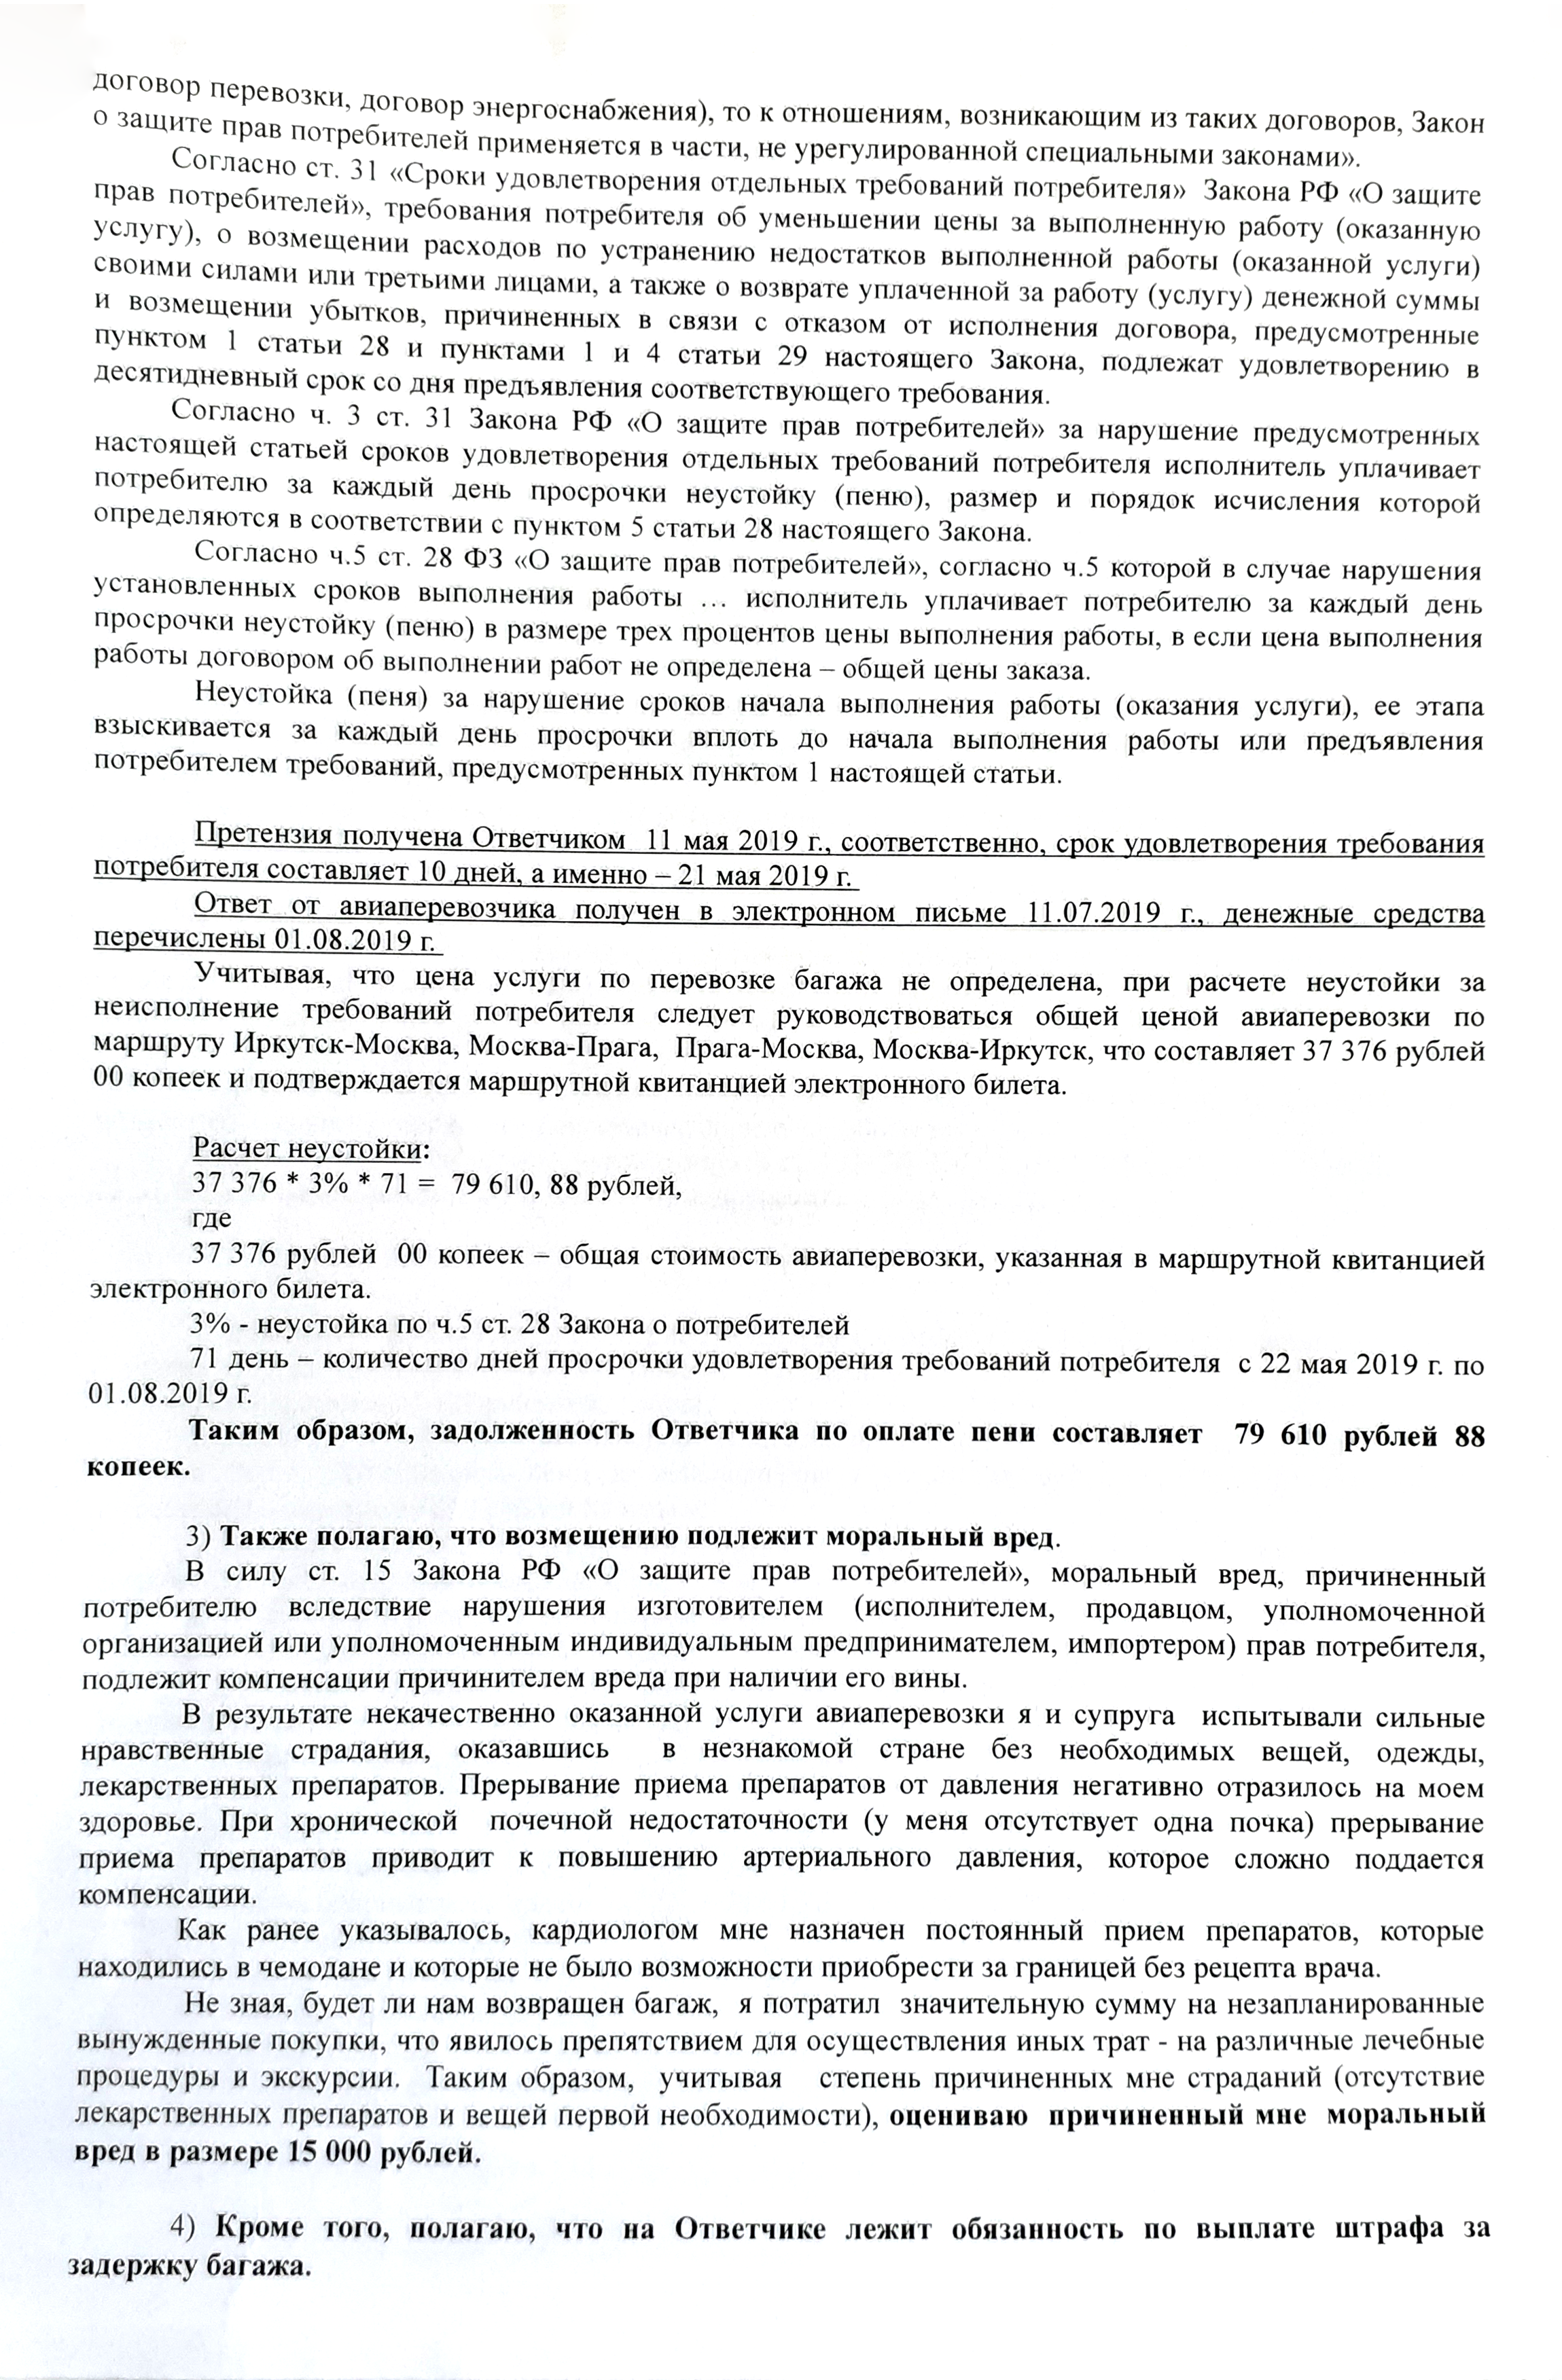 Уточненный иск Сергея с итоговыми требованиями к авиакомпании — именно на них ориентировался суд в своем решении